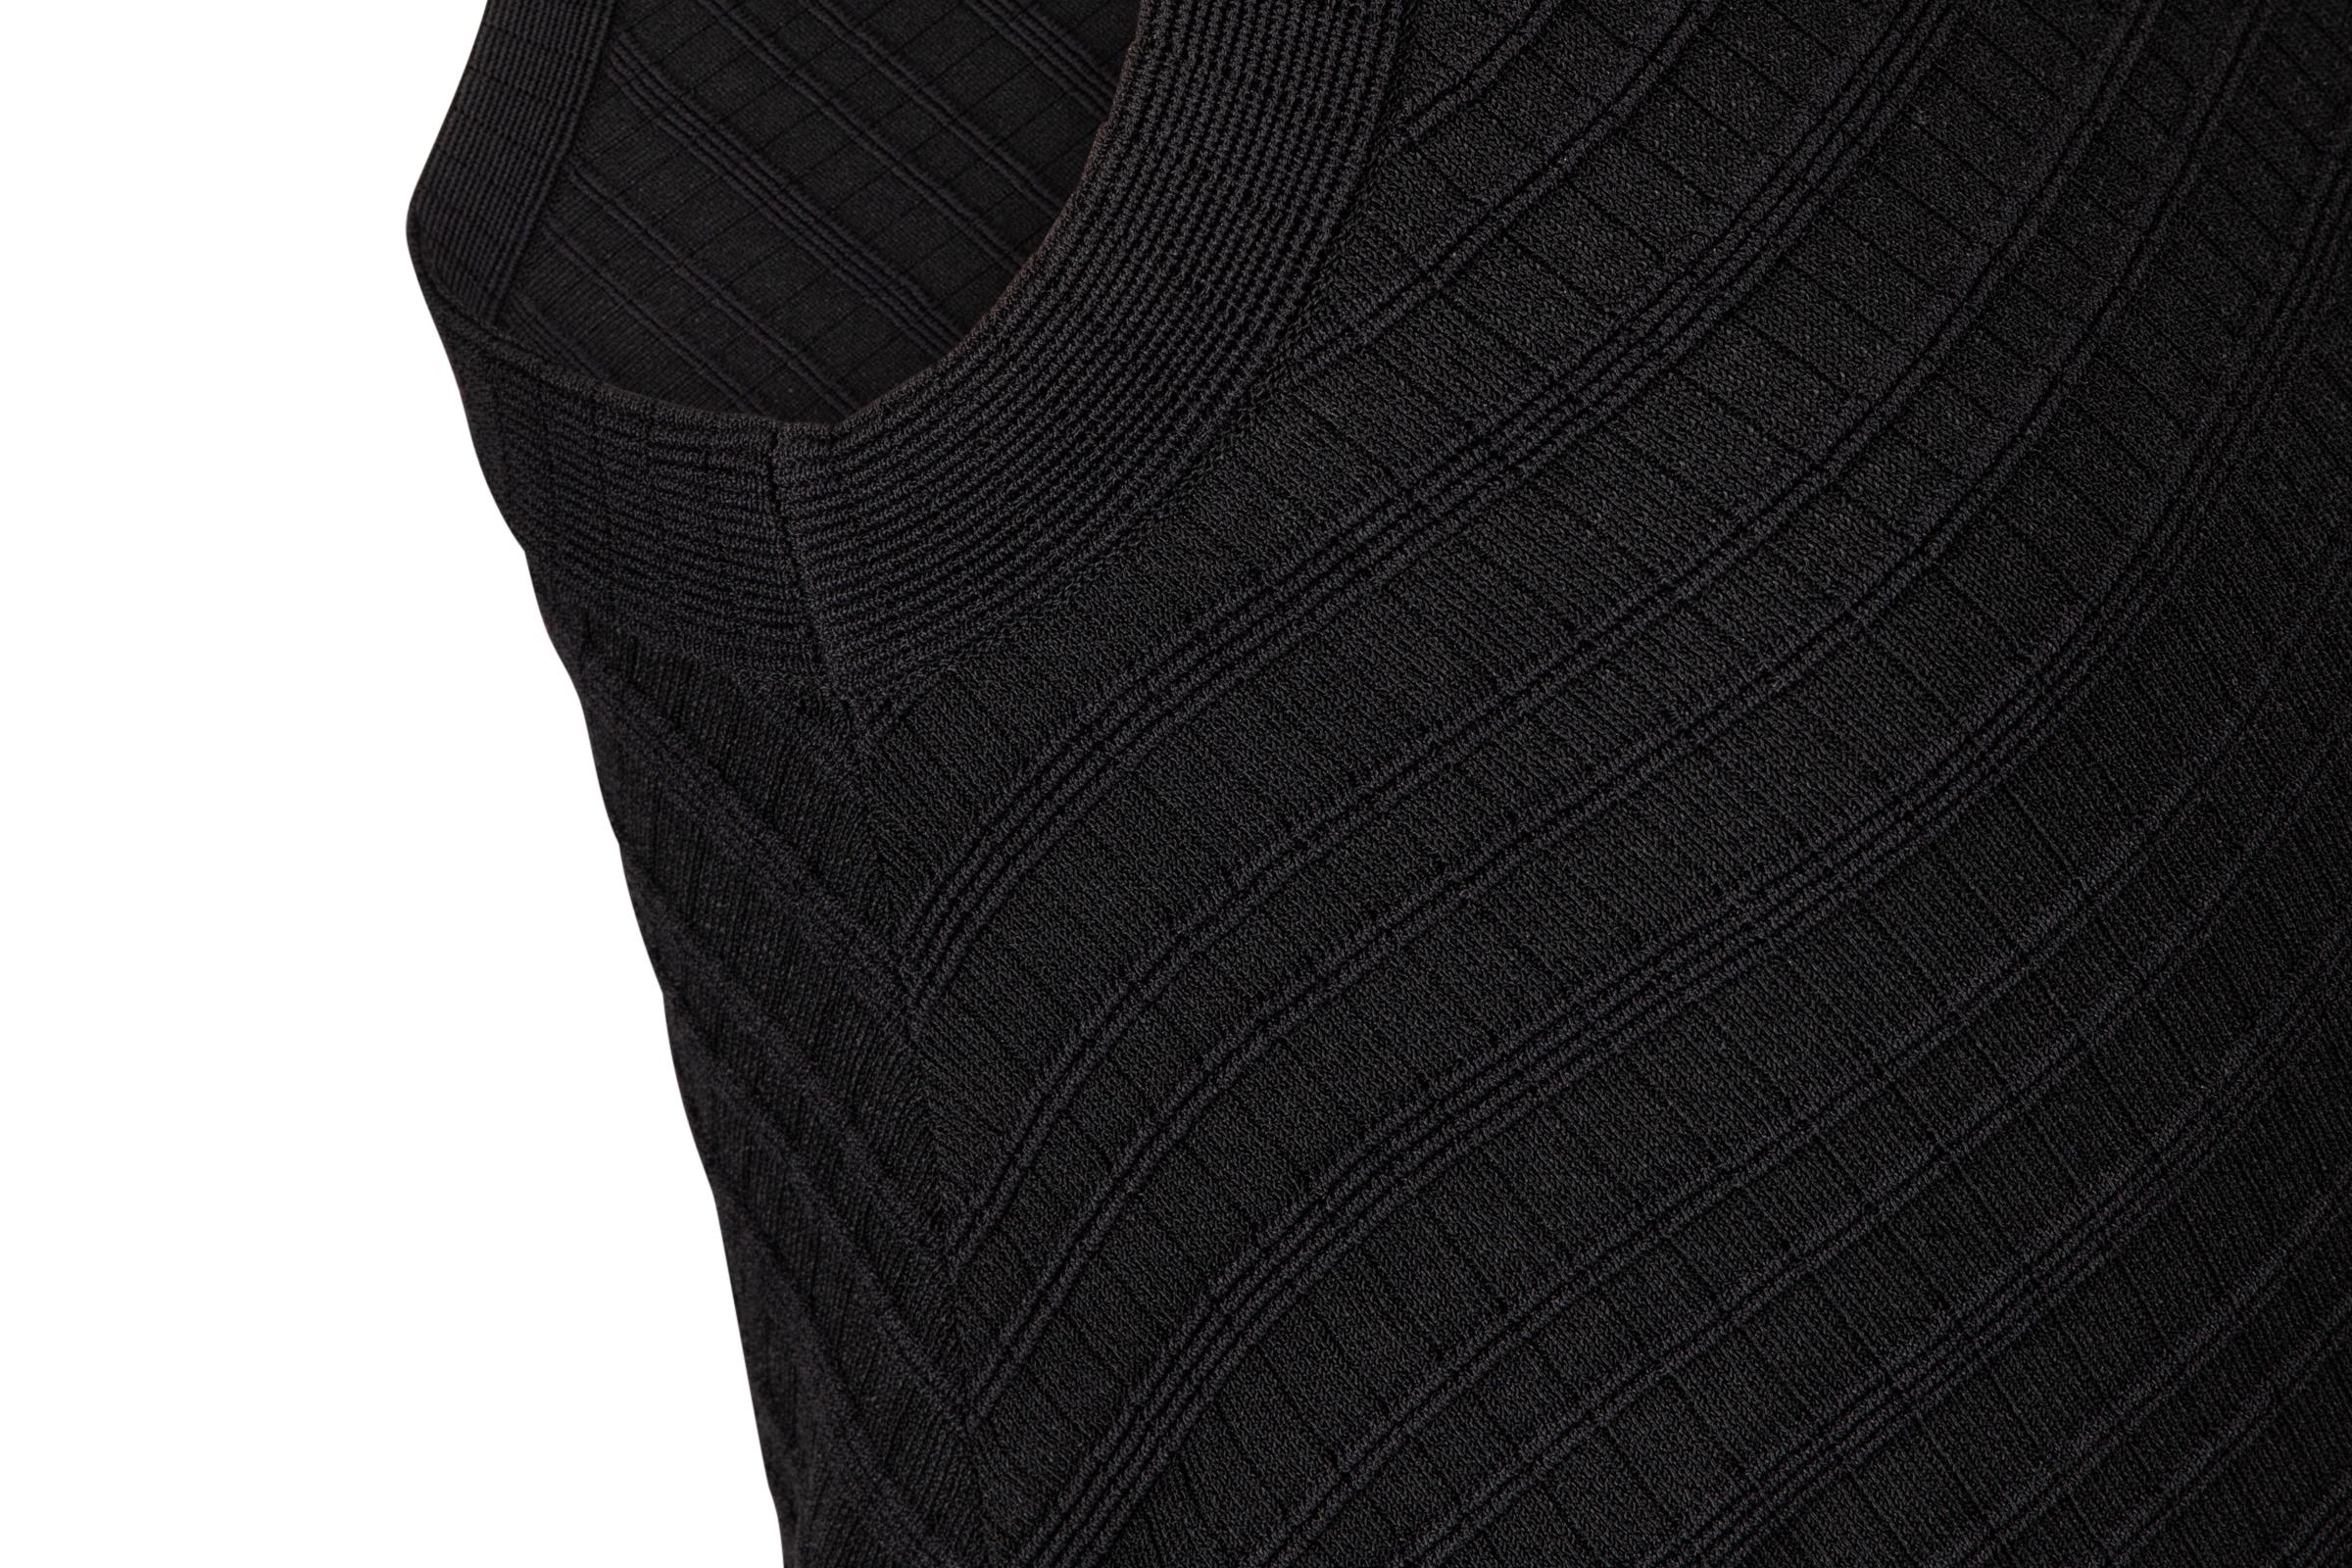 Giorgio Armani Top Black Textured Fabric Classic  40 / 6 In Excellent Condition For Sale In Miami, FL